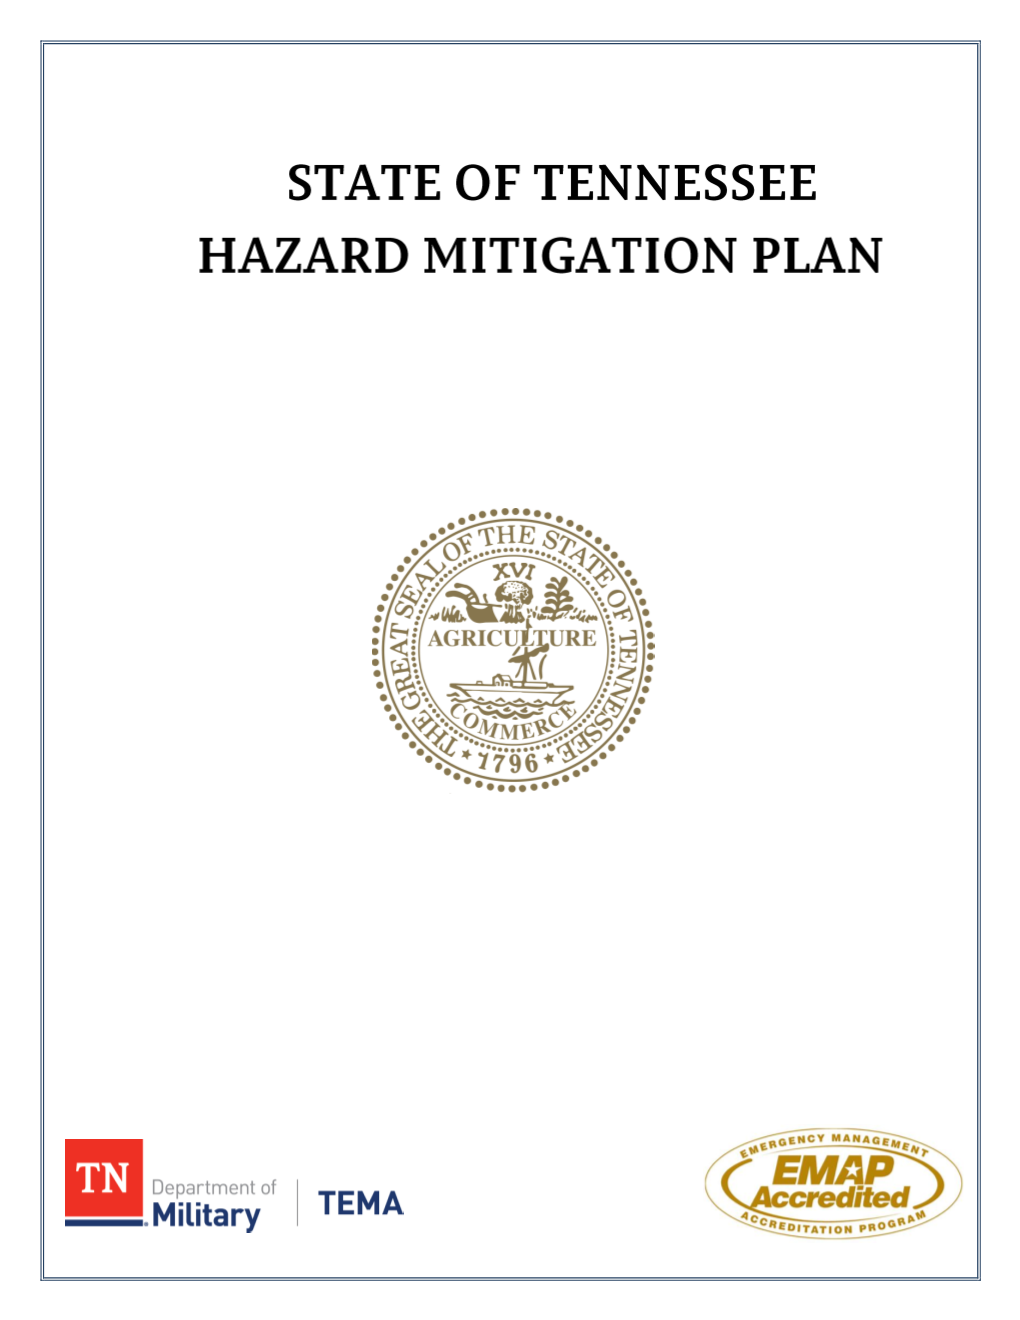 State of Tennessee Standard State Hazard Mitigation Plan